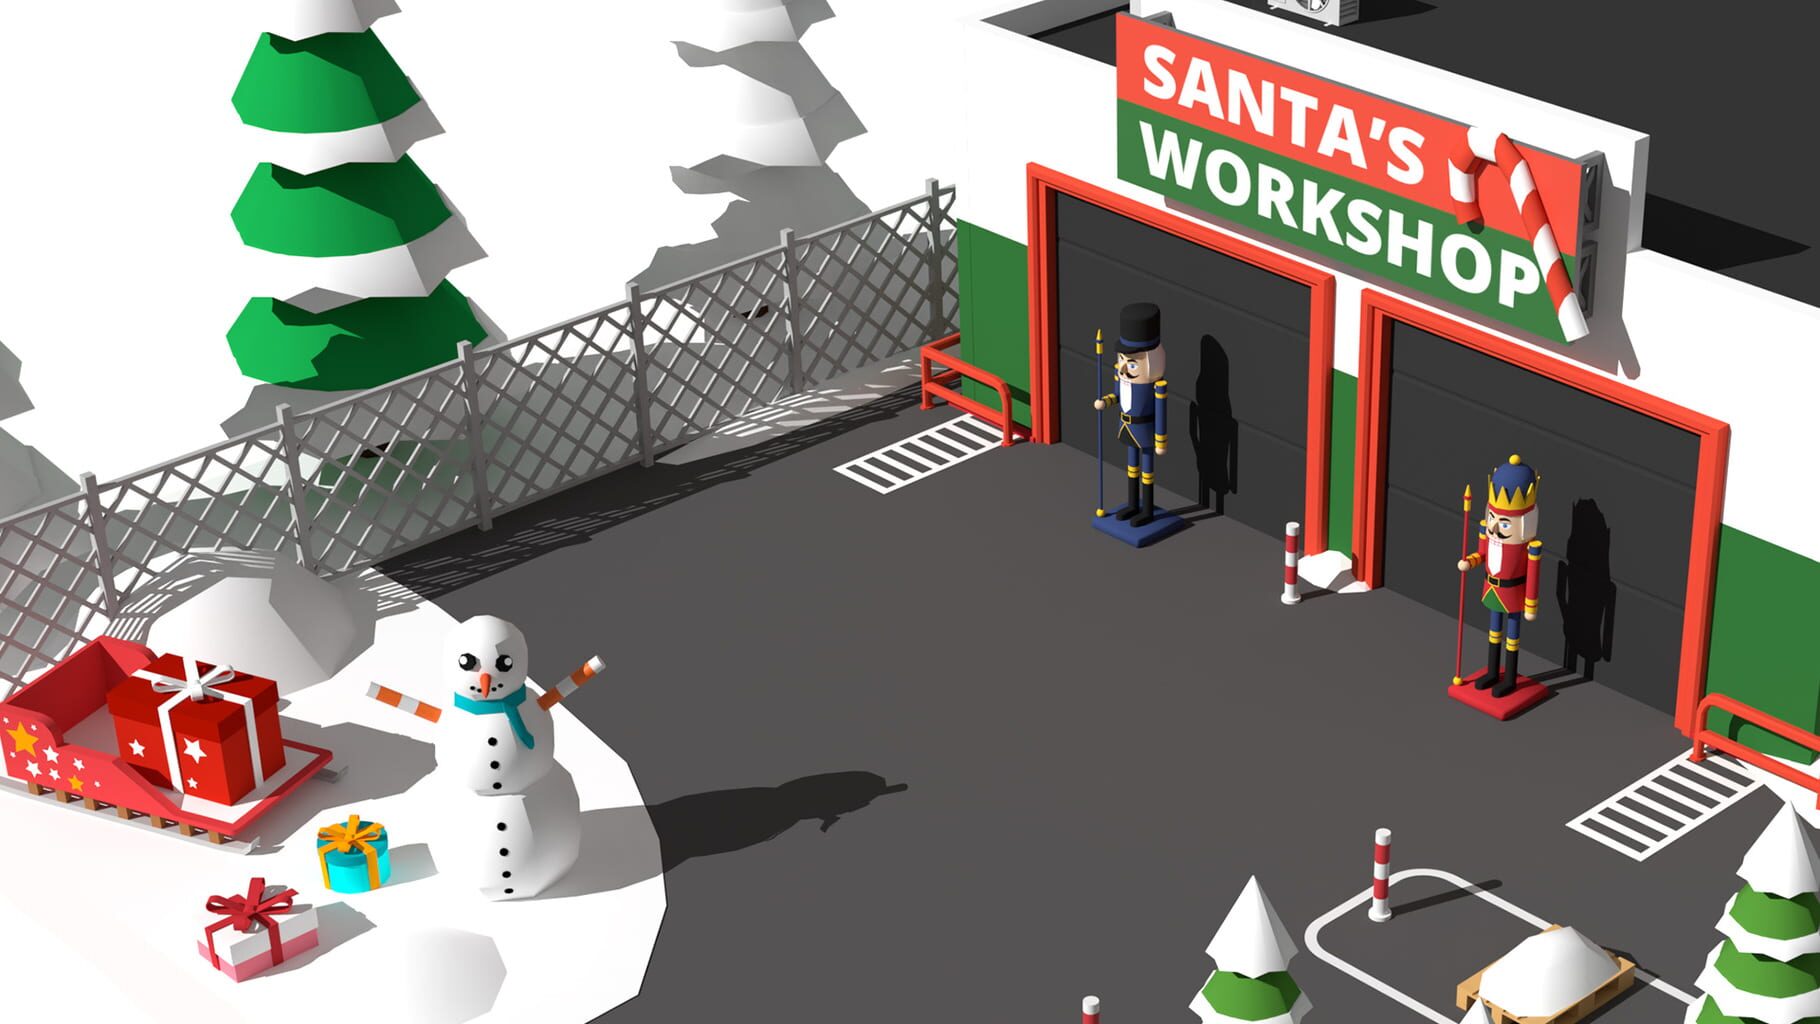 Forklift Extreme: Santa's Workshop artwork